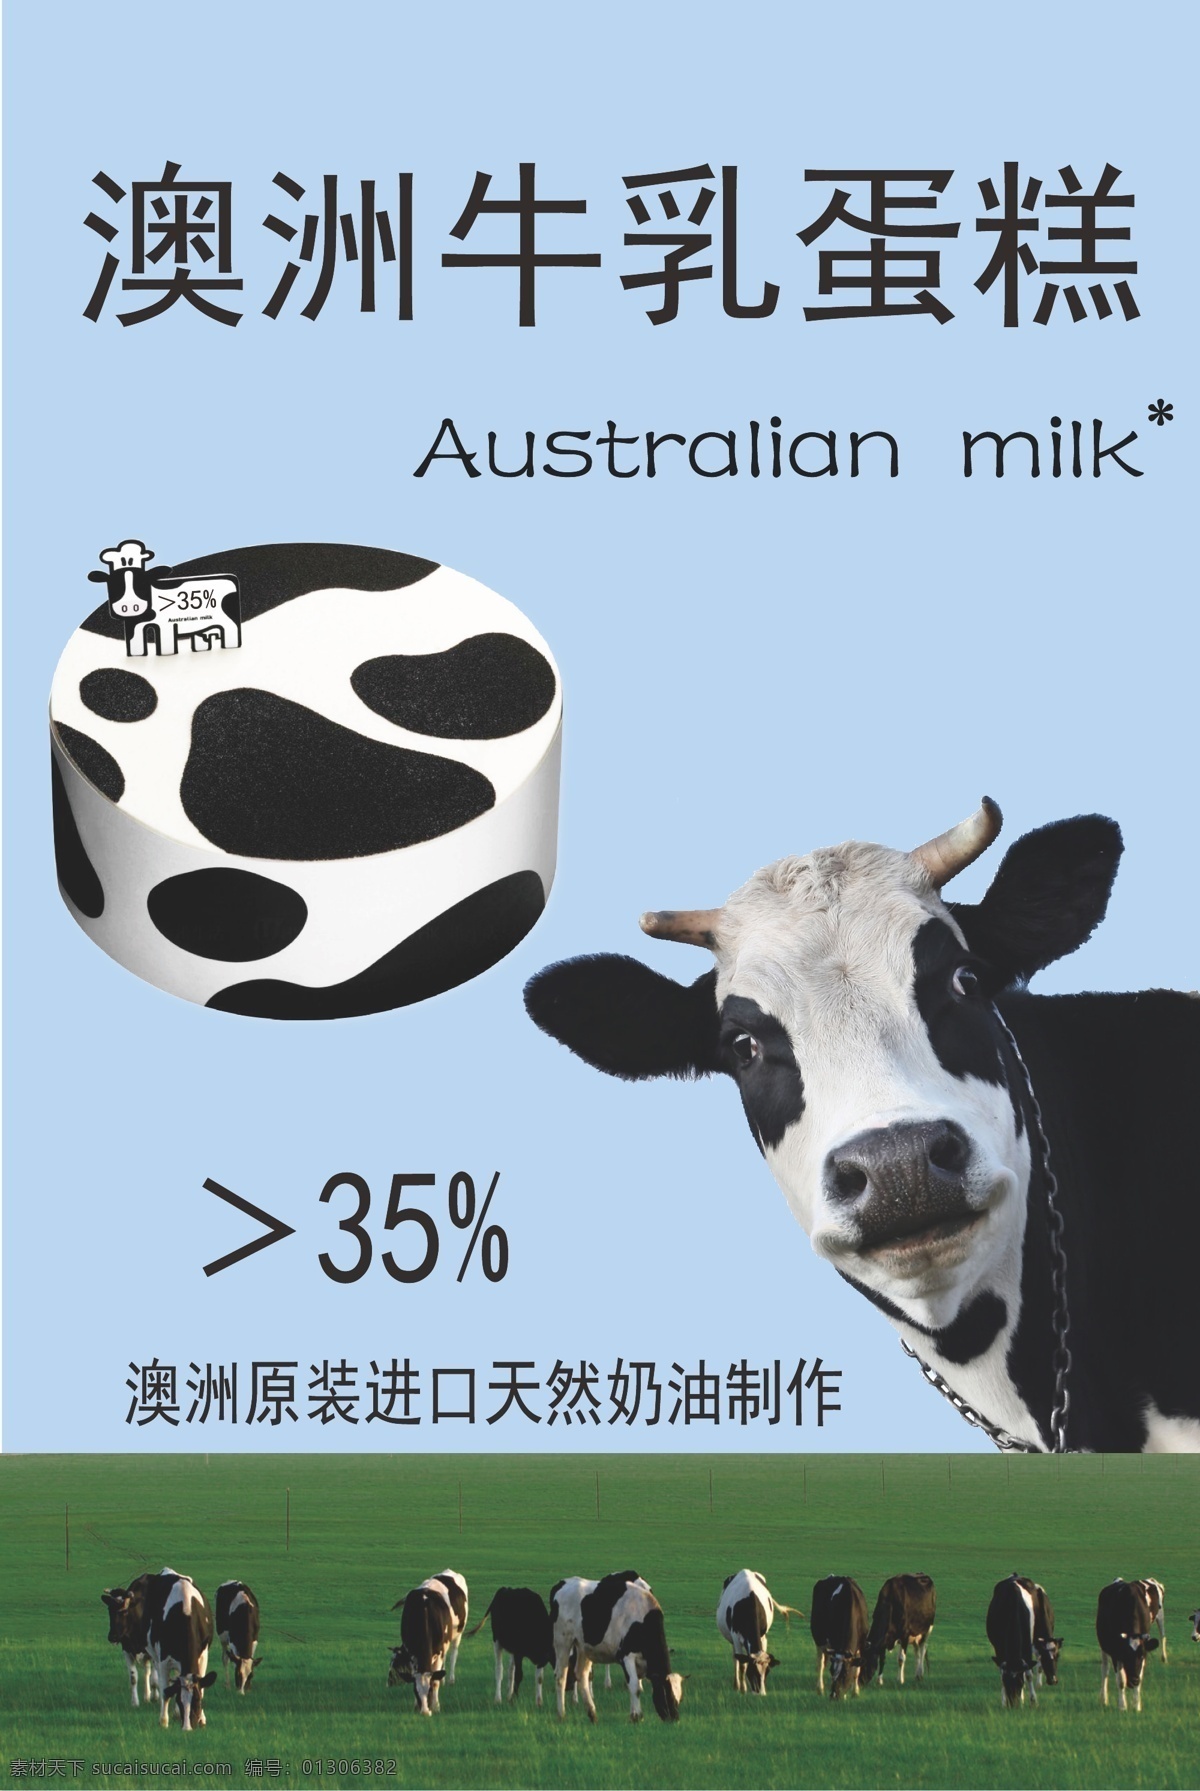 澳洲牛乳海报 奶牛 海报 澳洲牛乳 蛋糕海报